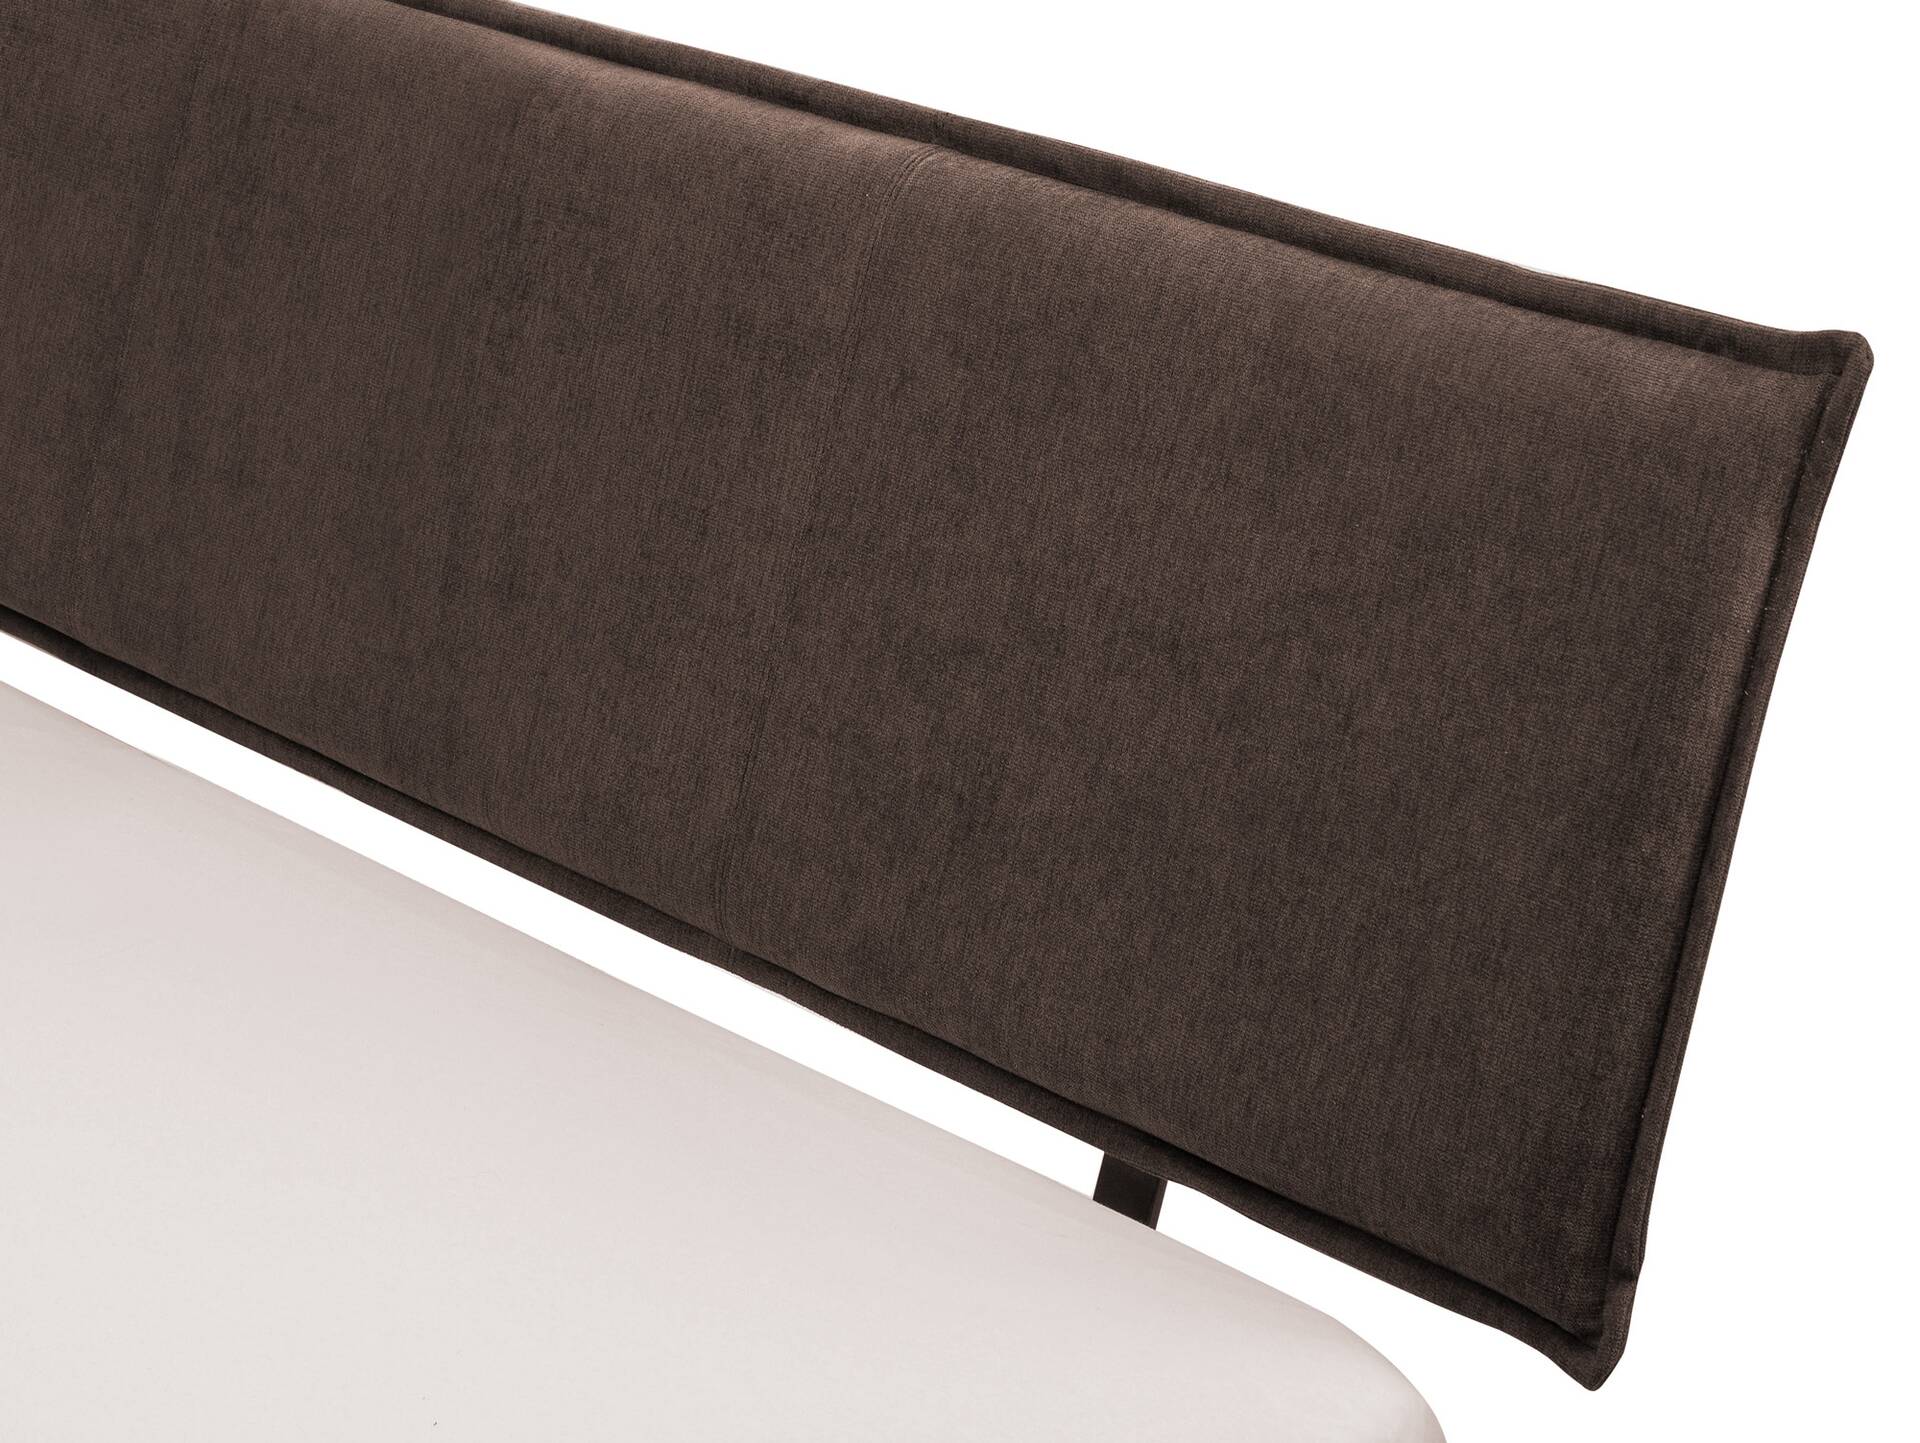 CORDINO 4-Fuß-Bett aus Eiche mit Polster-Kopfteil, Material Massivholz 140 x 200 cm | Eiche unbehandelt | Stoff Braun | gebürstet